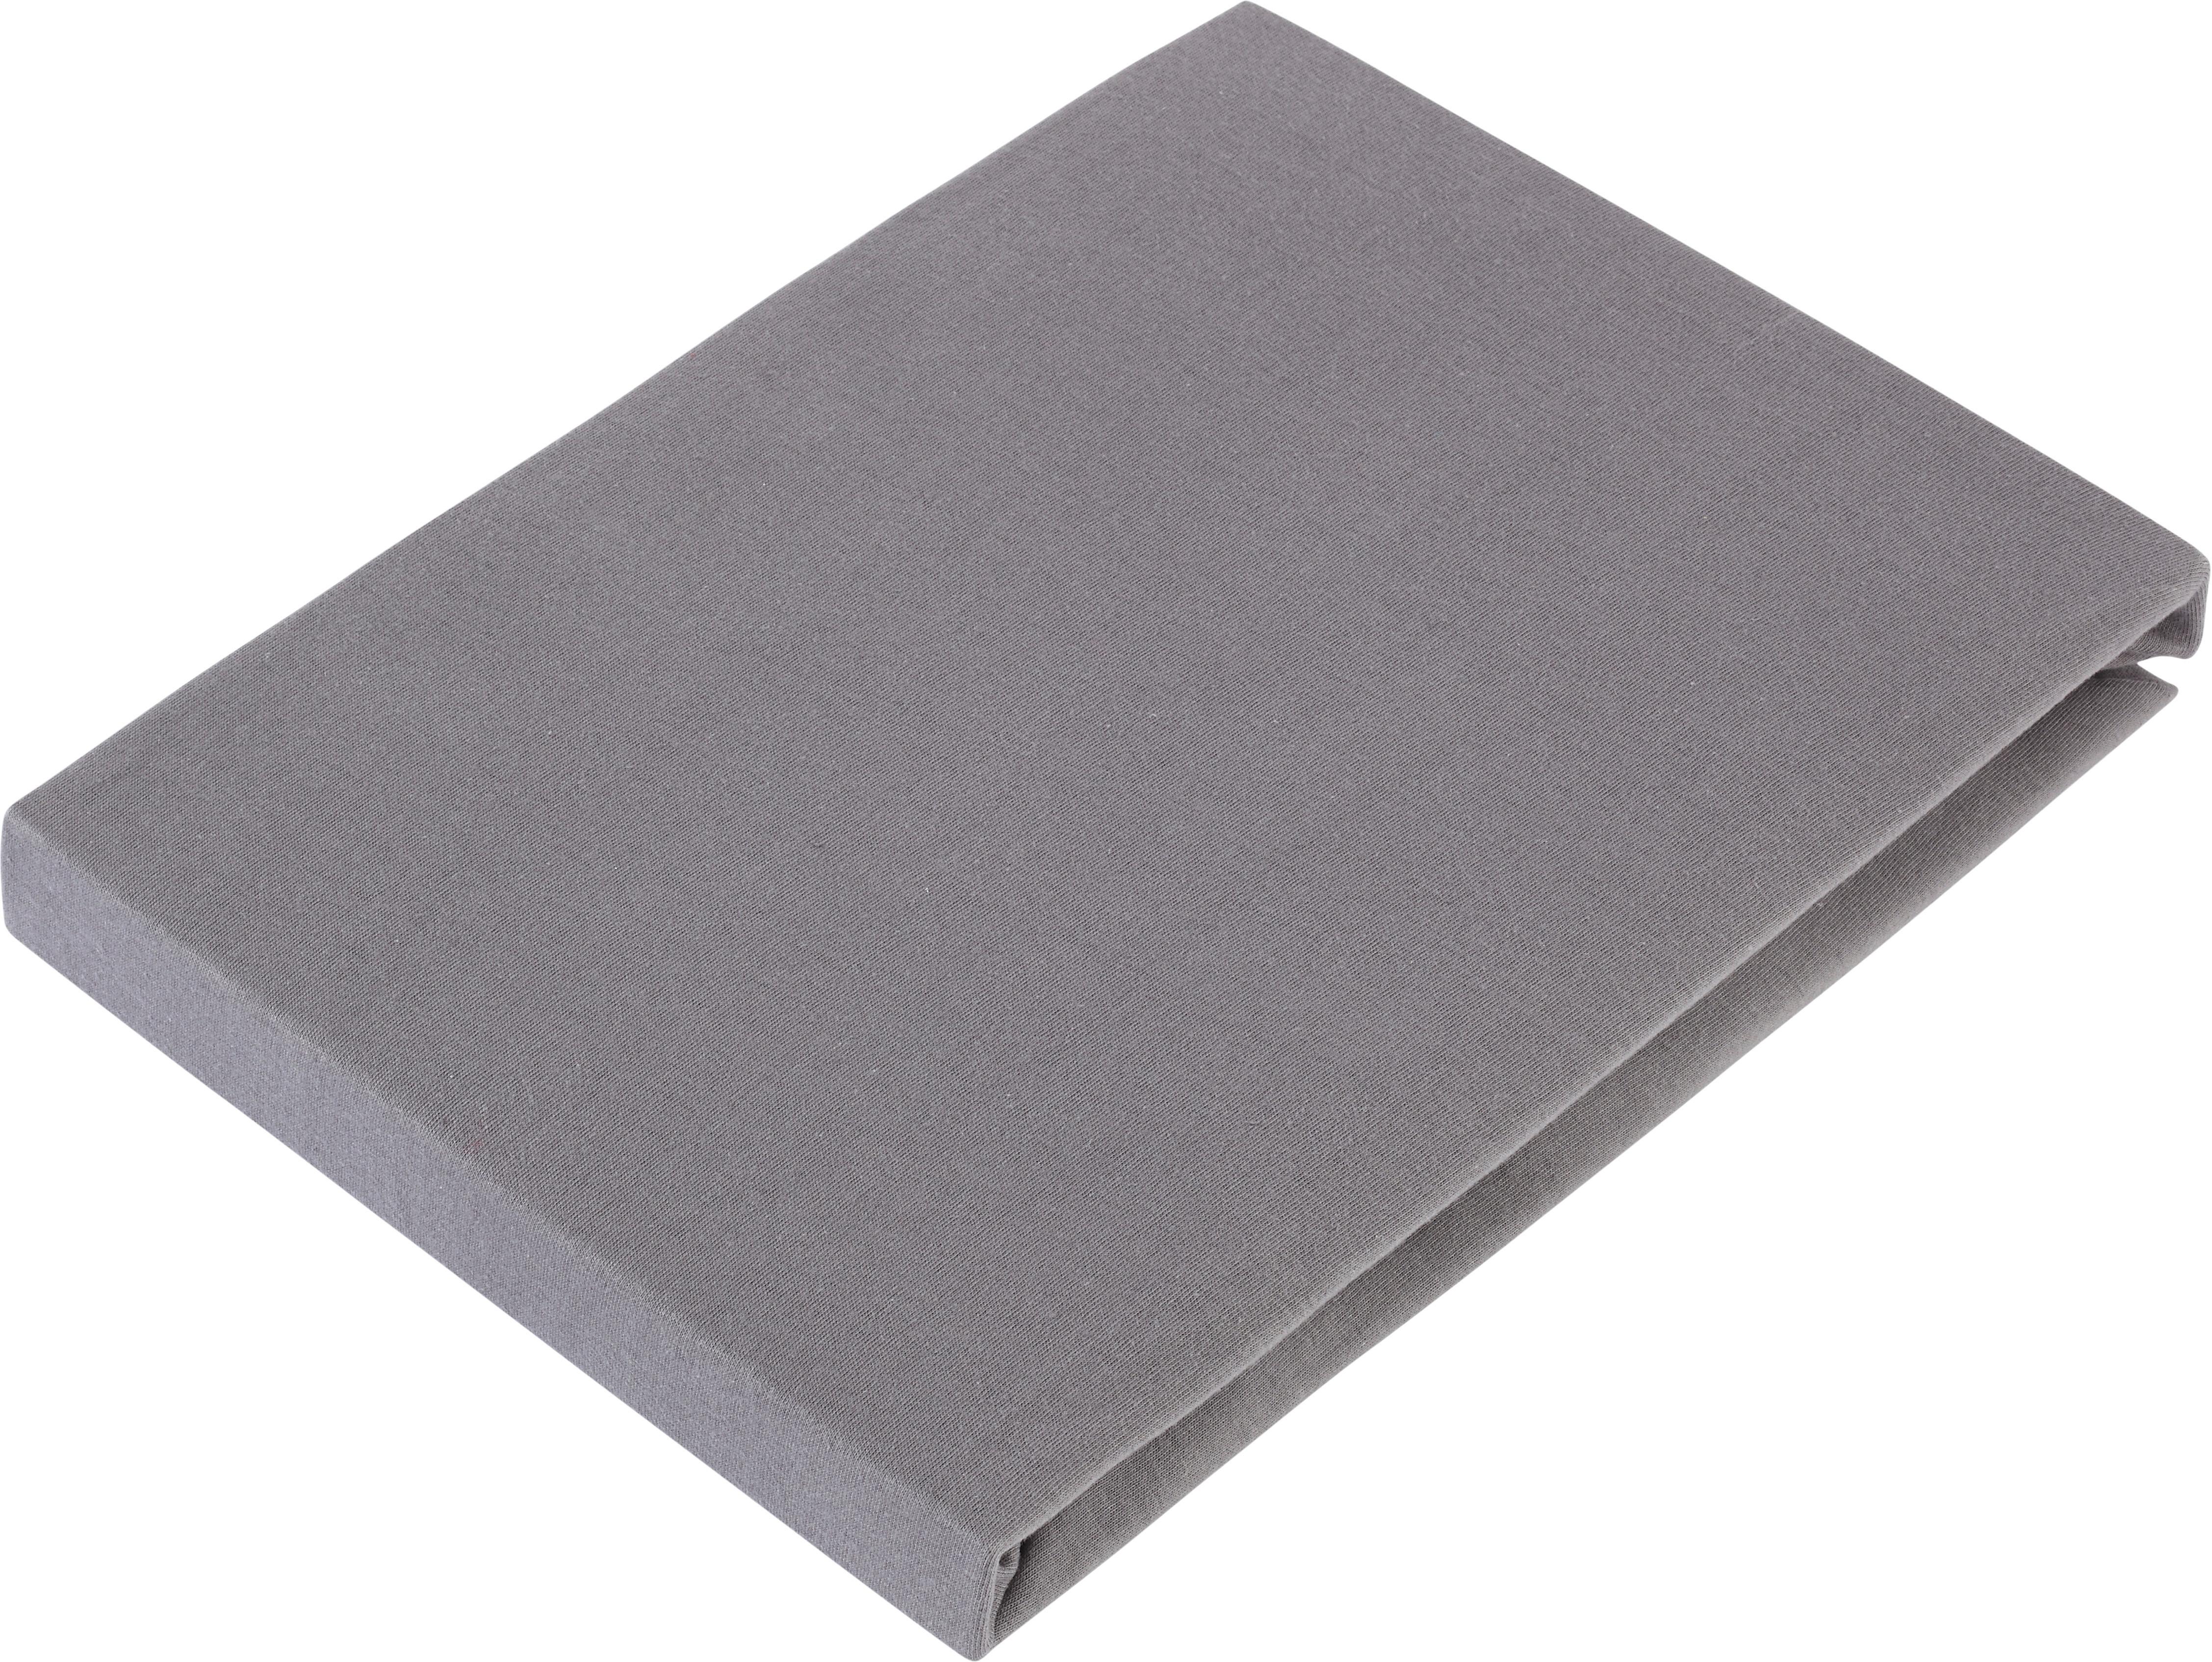 Elastické Prostěradlo Basic, 100/200 Cm - šedá, textil (100/200cm) - Modern Living